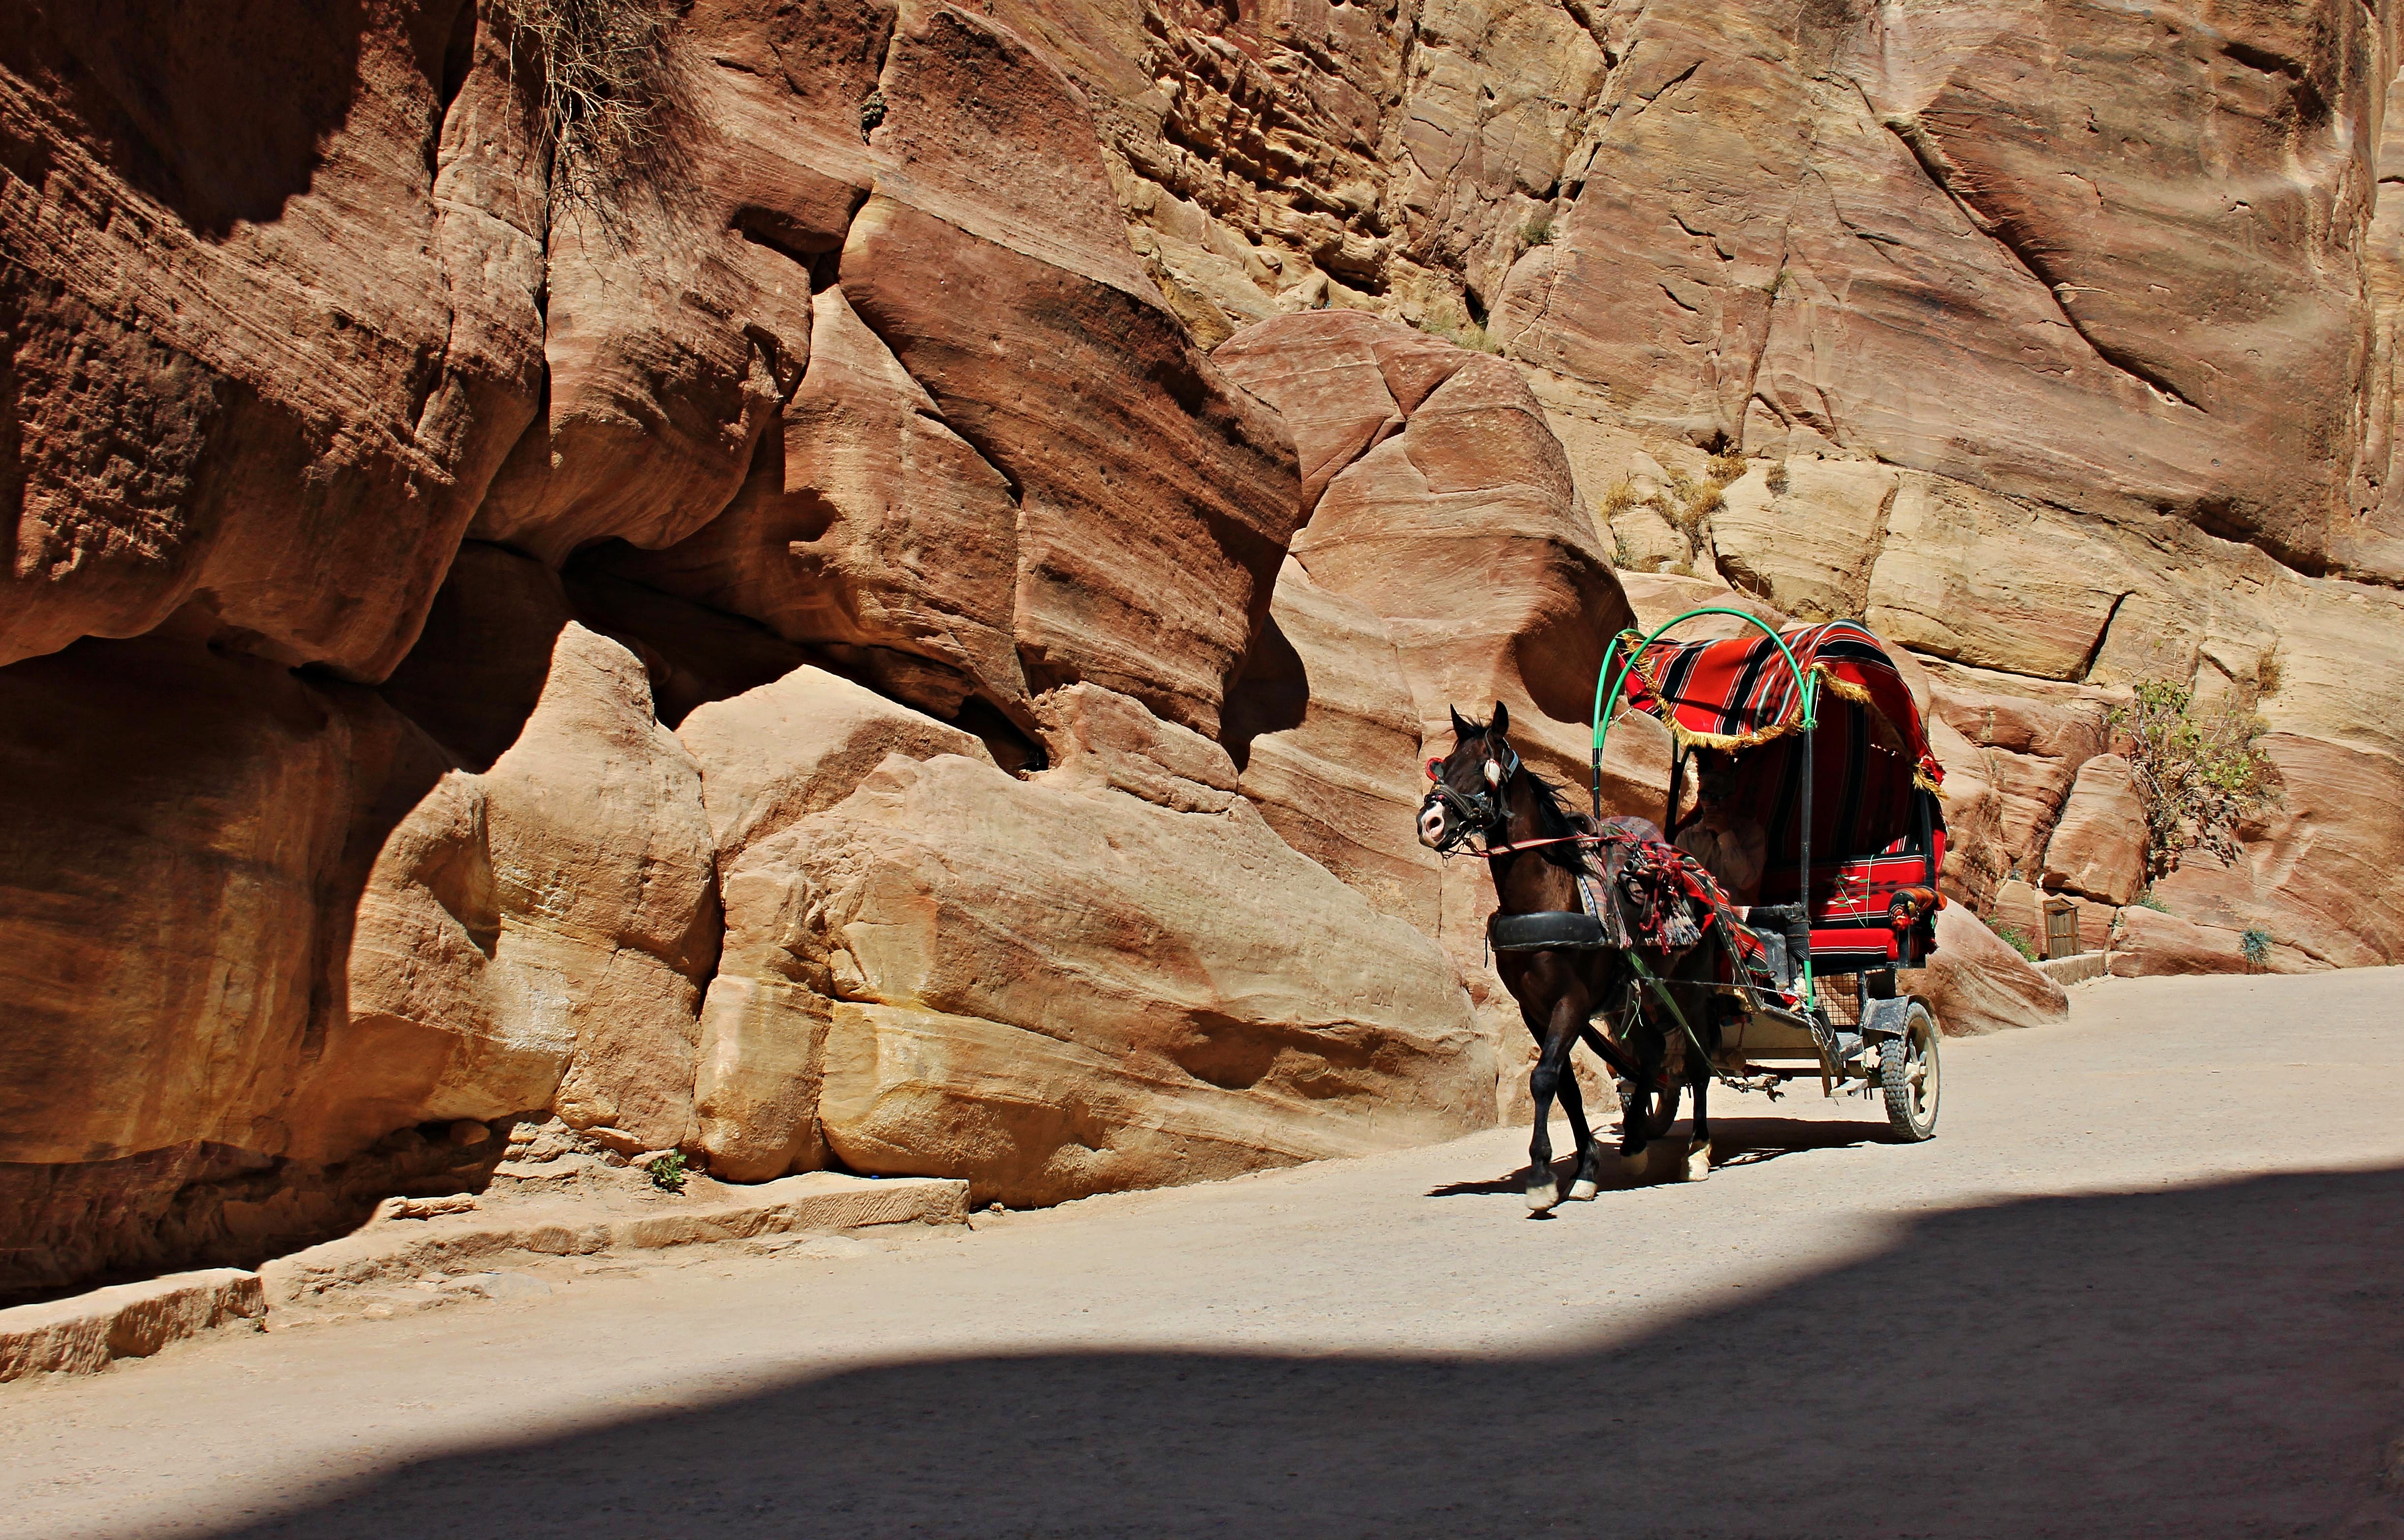 Chariot in Petra, Siq